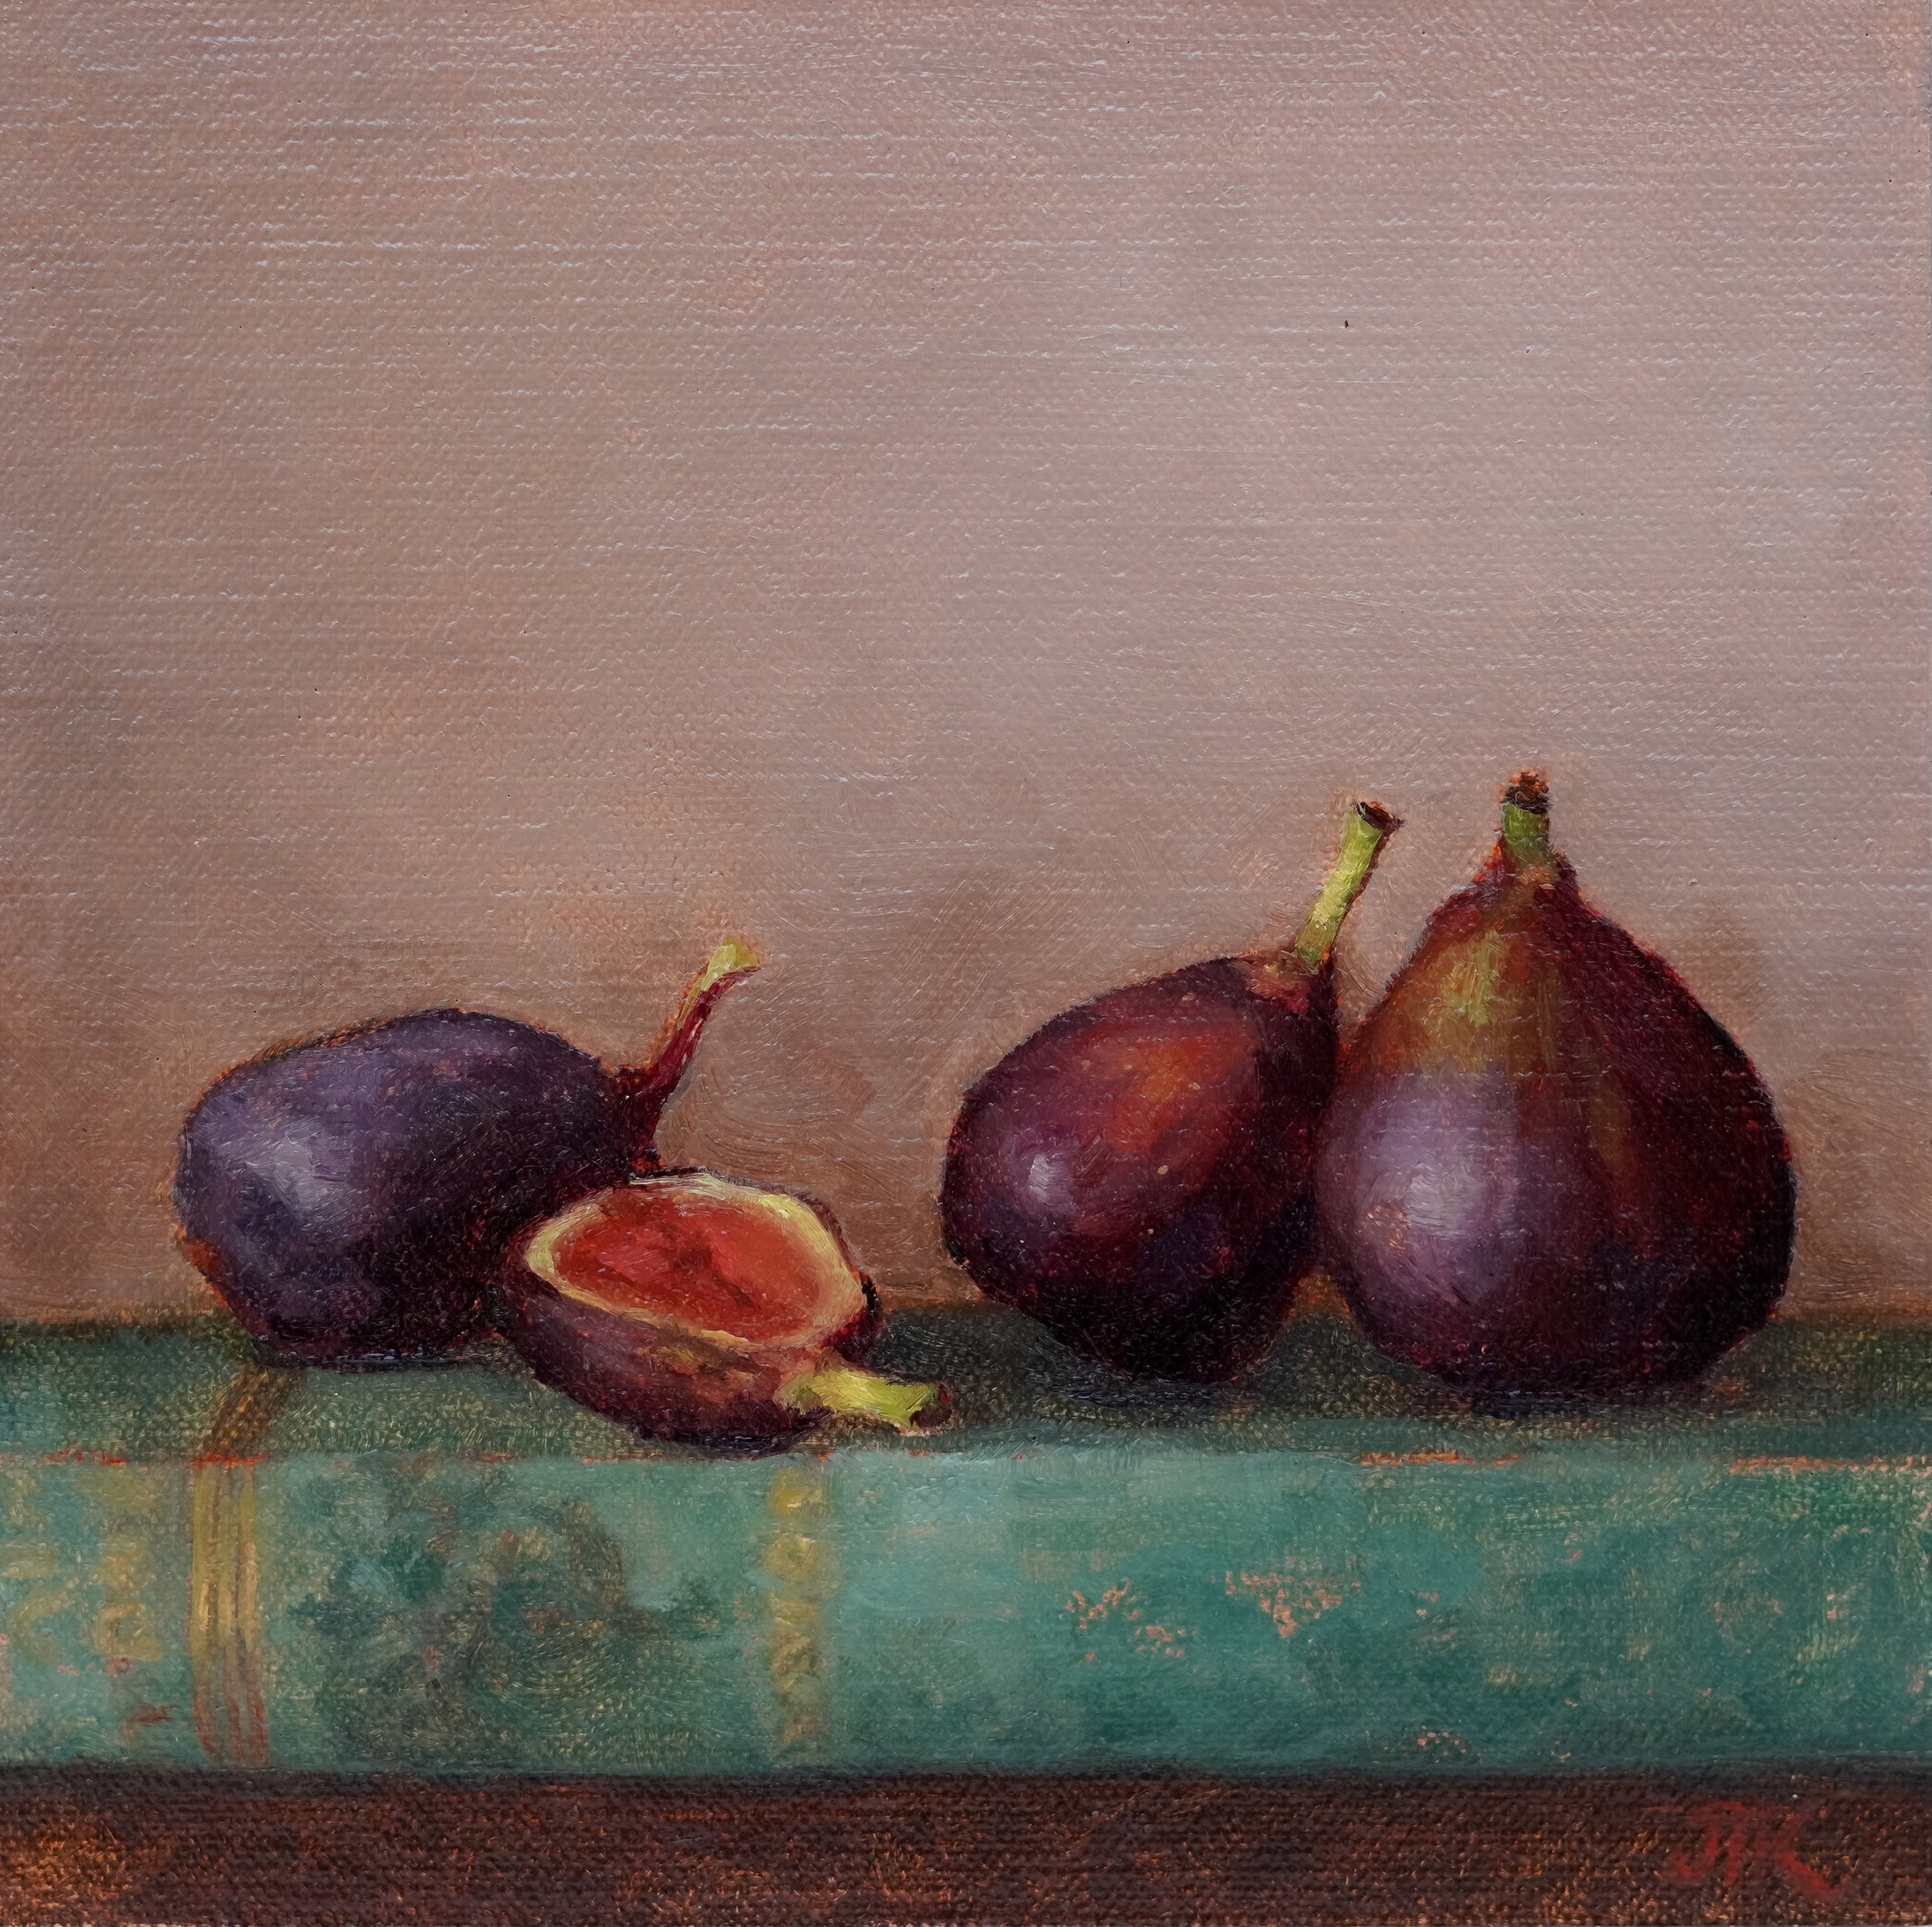 Summer Figs no. 1 by Julie Tsang Kavanagh